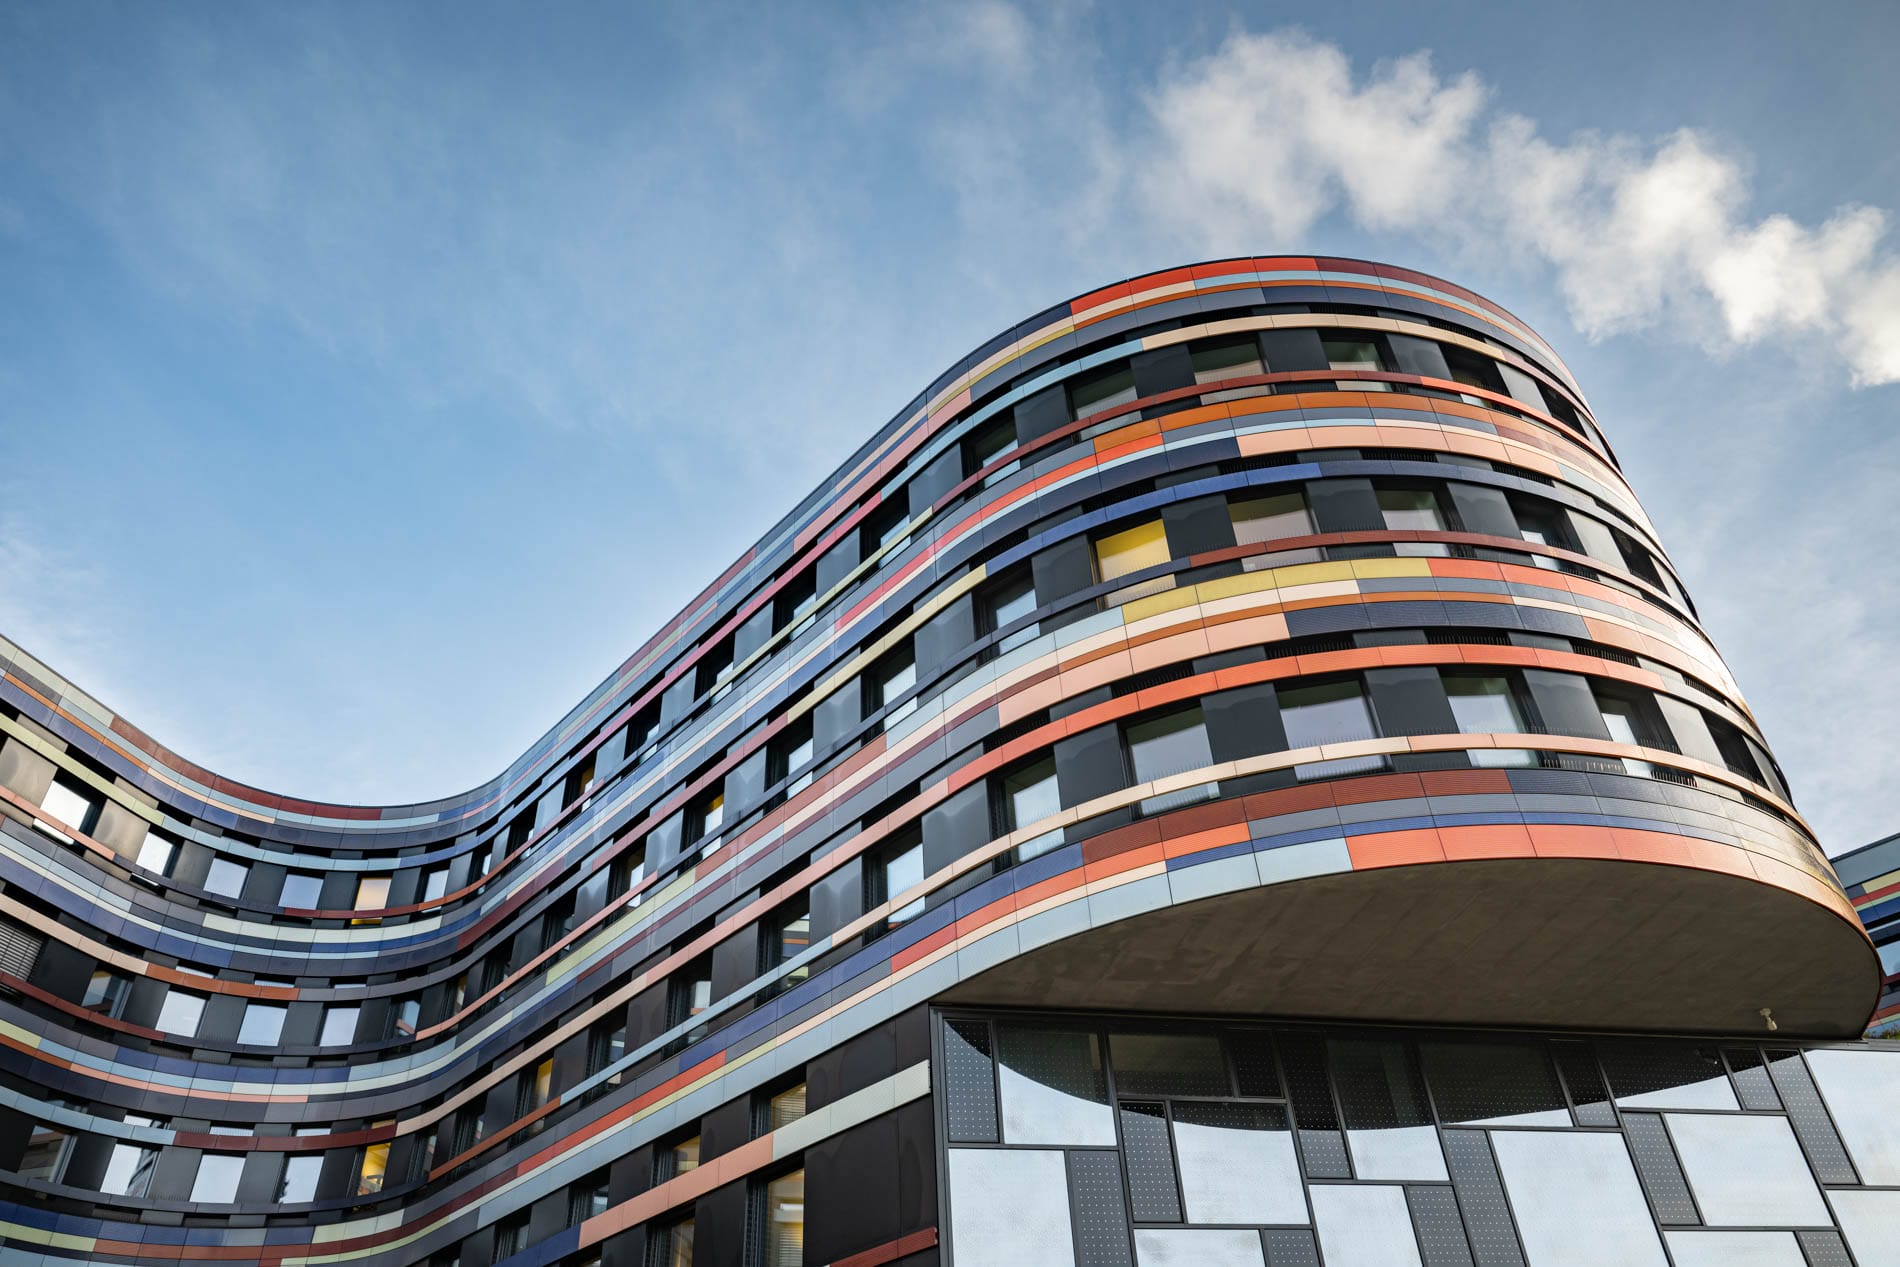 Architekturfotografen interessieren sich für moderne Architekturstrukturen, hier ist es ein Gebäude in Hamburg Harburg, das sich mit seiner farbigen Außenfassade vom Einheitsgrau vieler Gebäude abhebt.